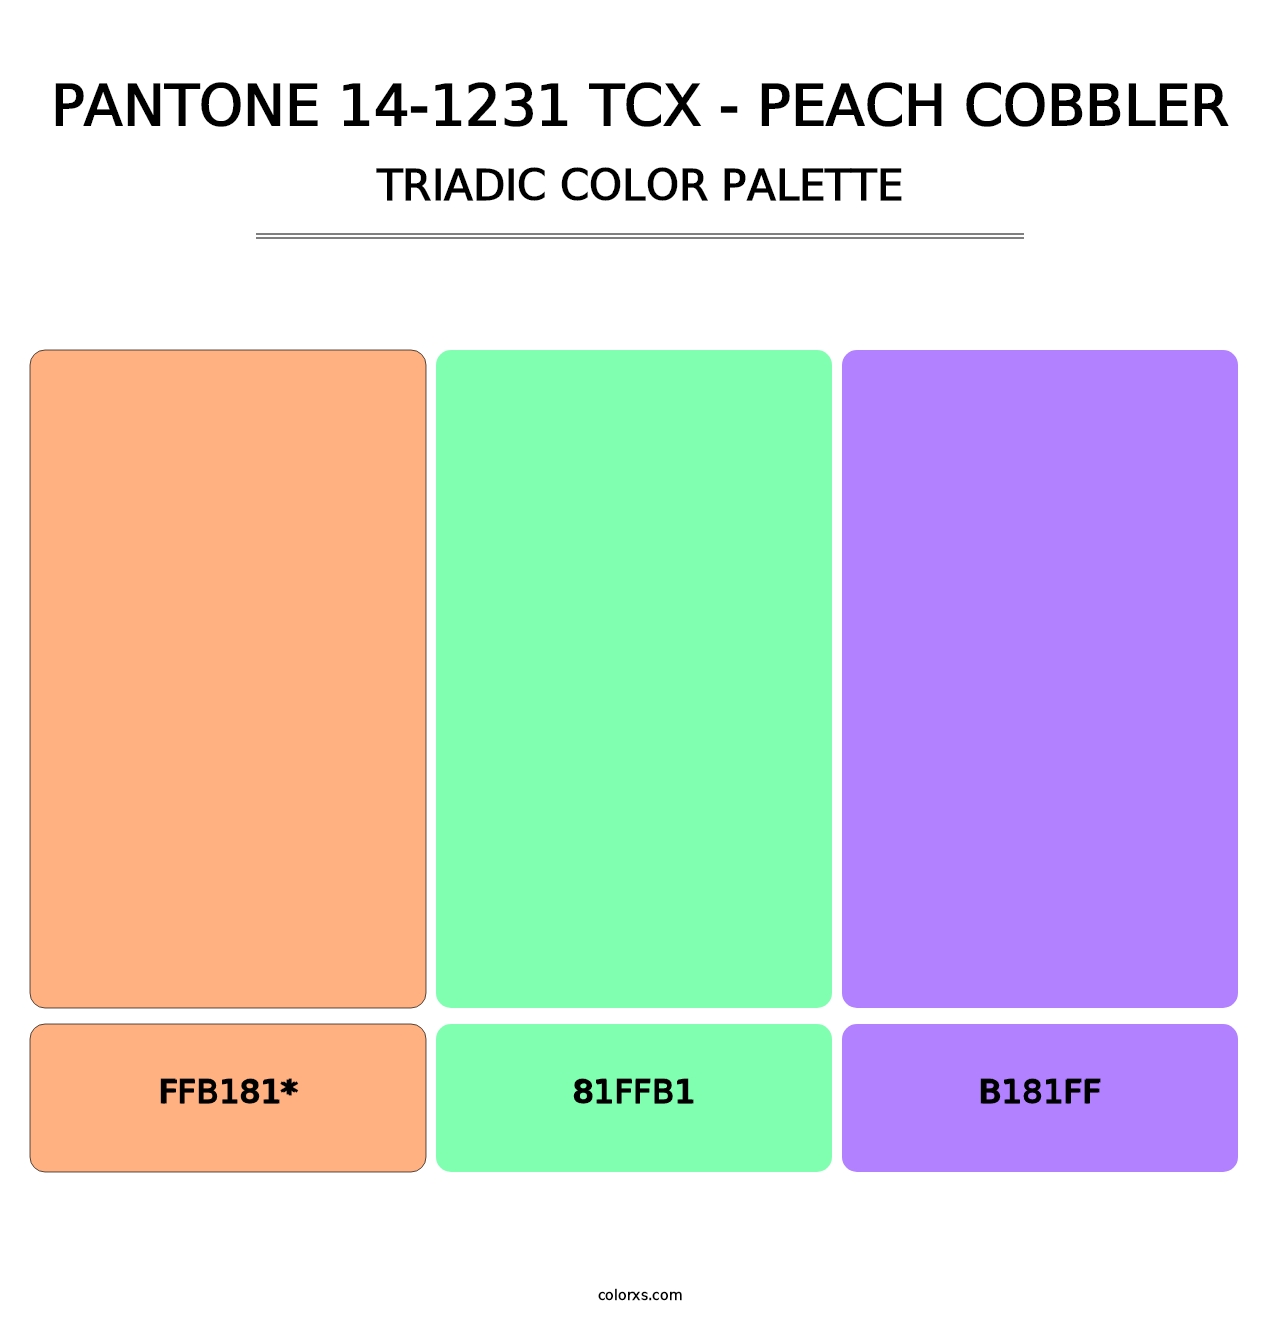 PANTONE 14-1231 TCX - Peach Cobbler - Triadic Color Palette